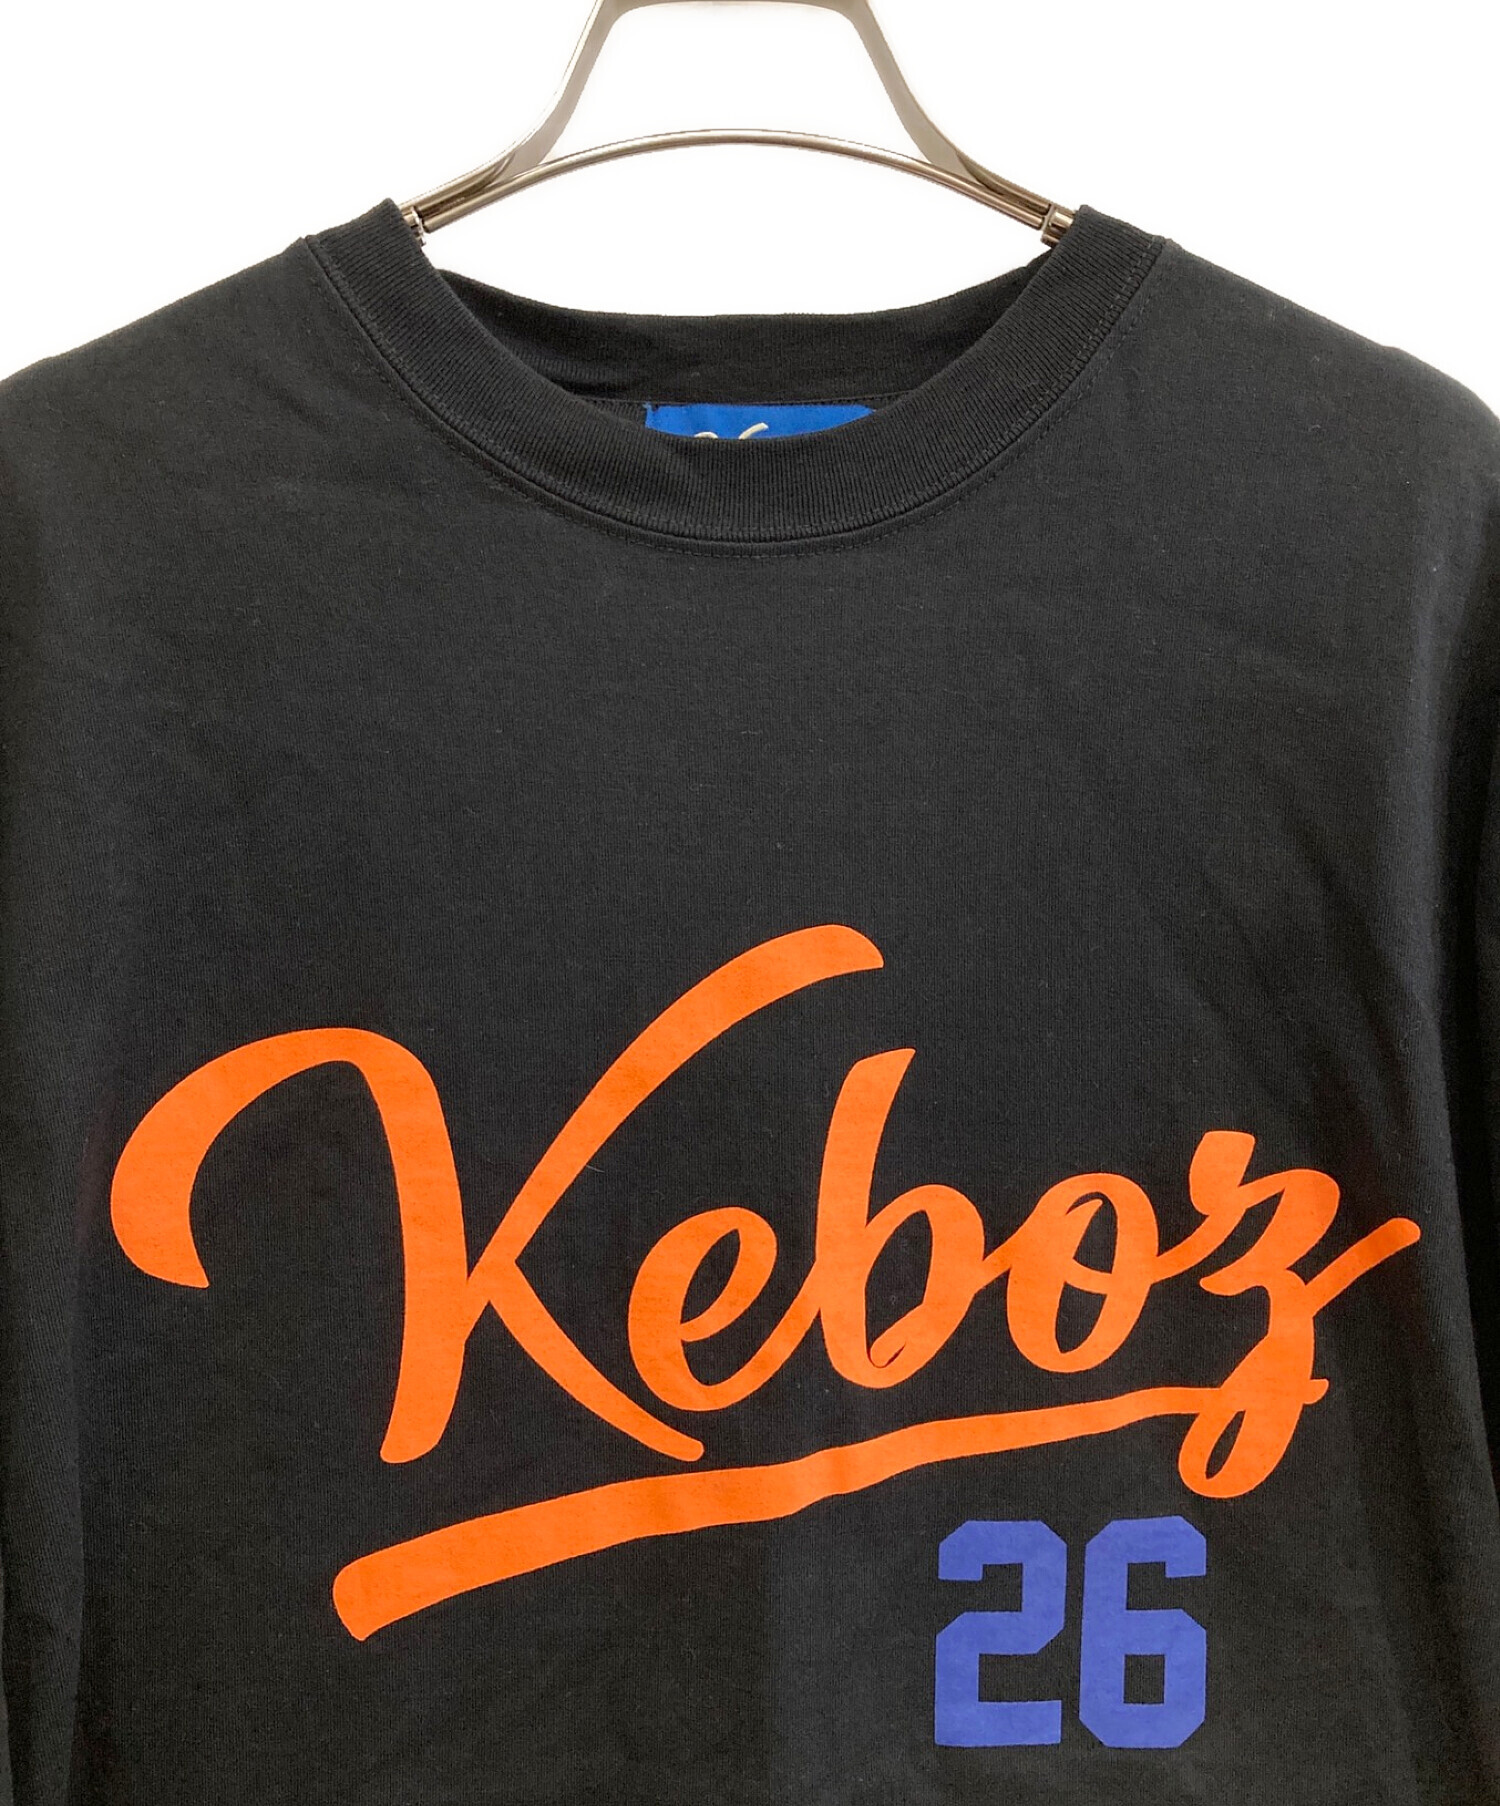 KEBOZ (ケボズ) FRO CLUB (フロクラブ) Tシャツ ブラック サイズ:L